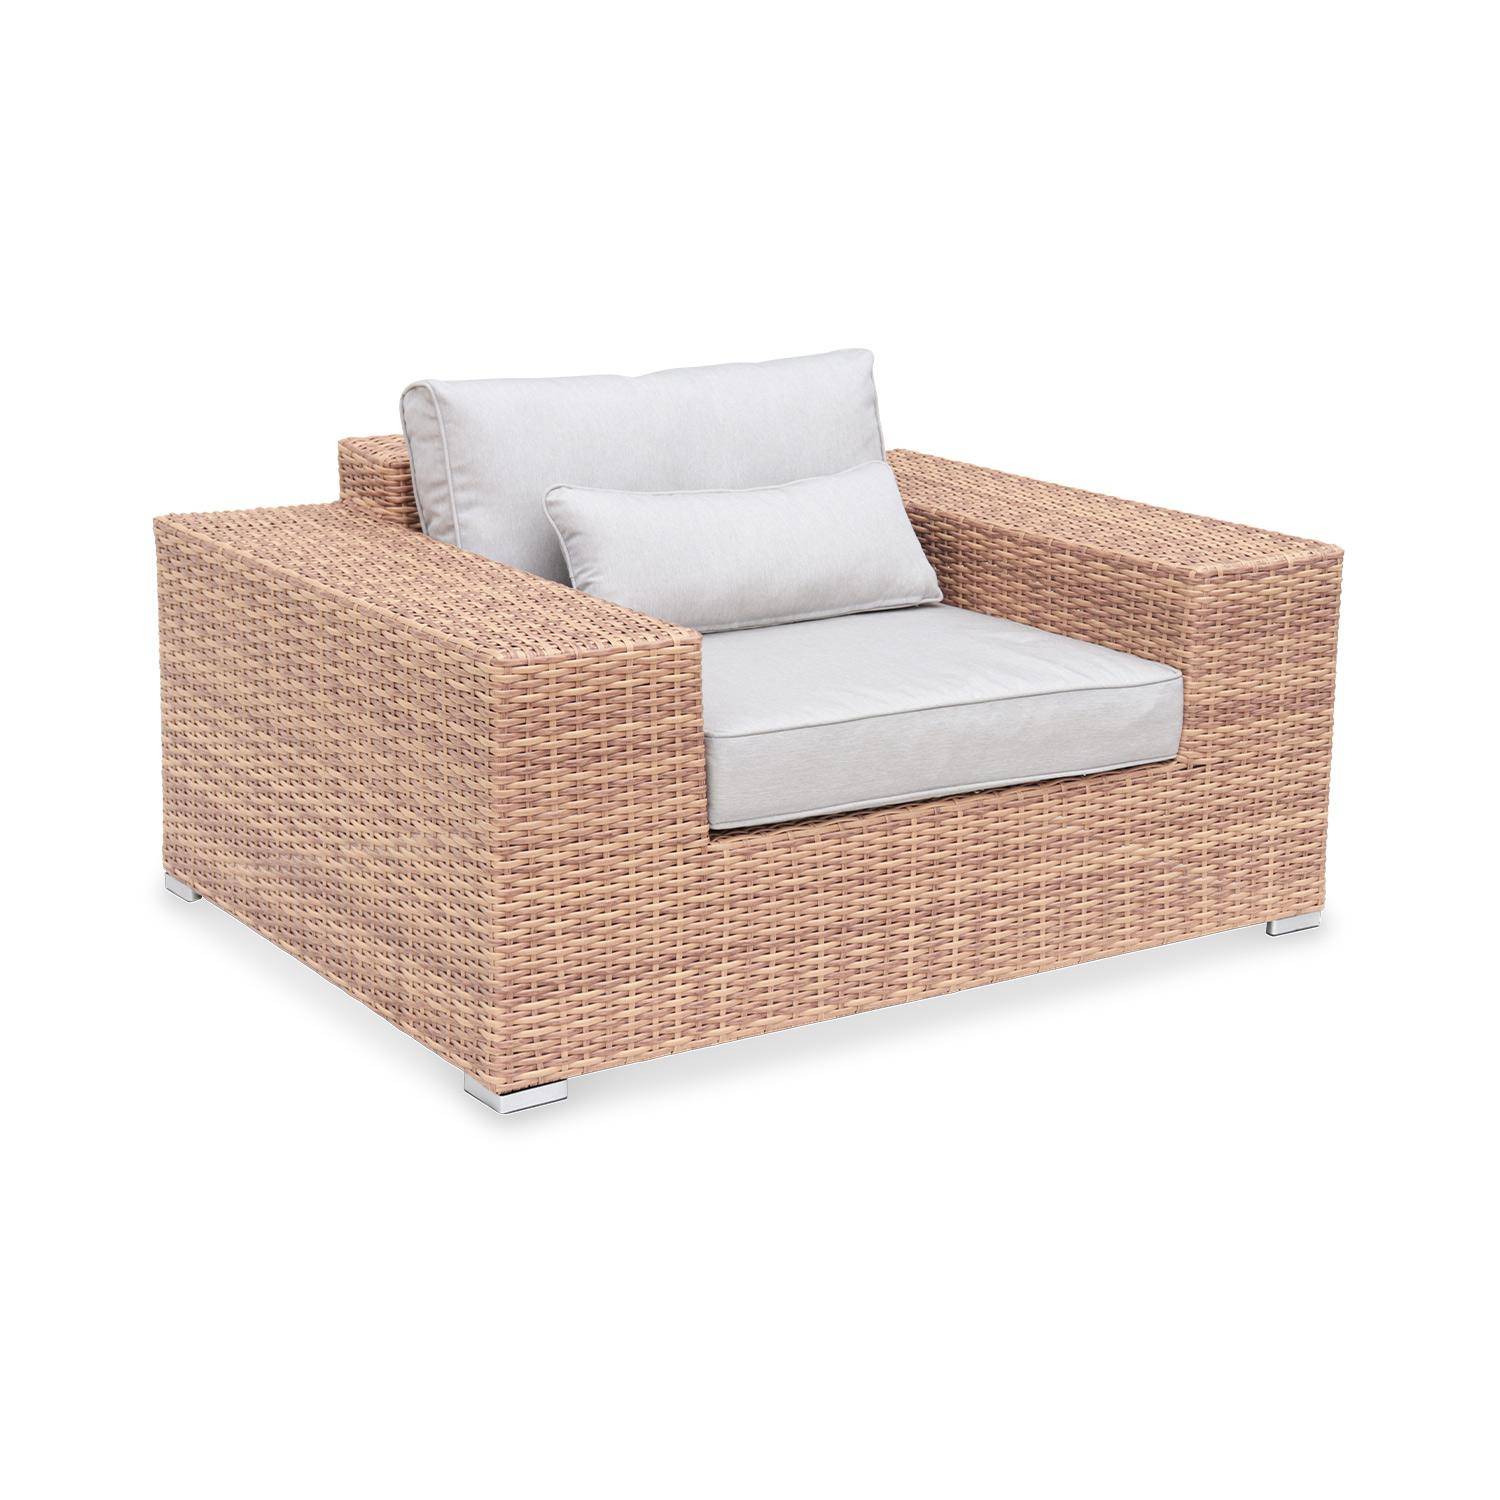 Extra-large 4-seater polyrattan garden sofa set - Sofa, 2 Armchairs, Coffee table - Gubbio - Beige Photo2